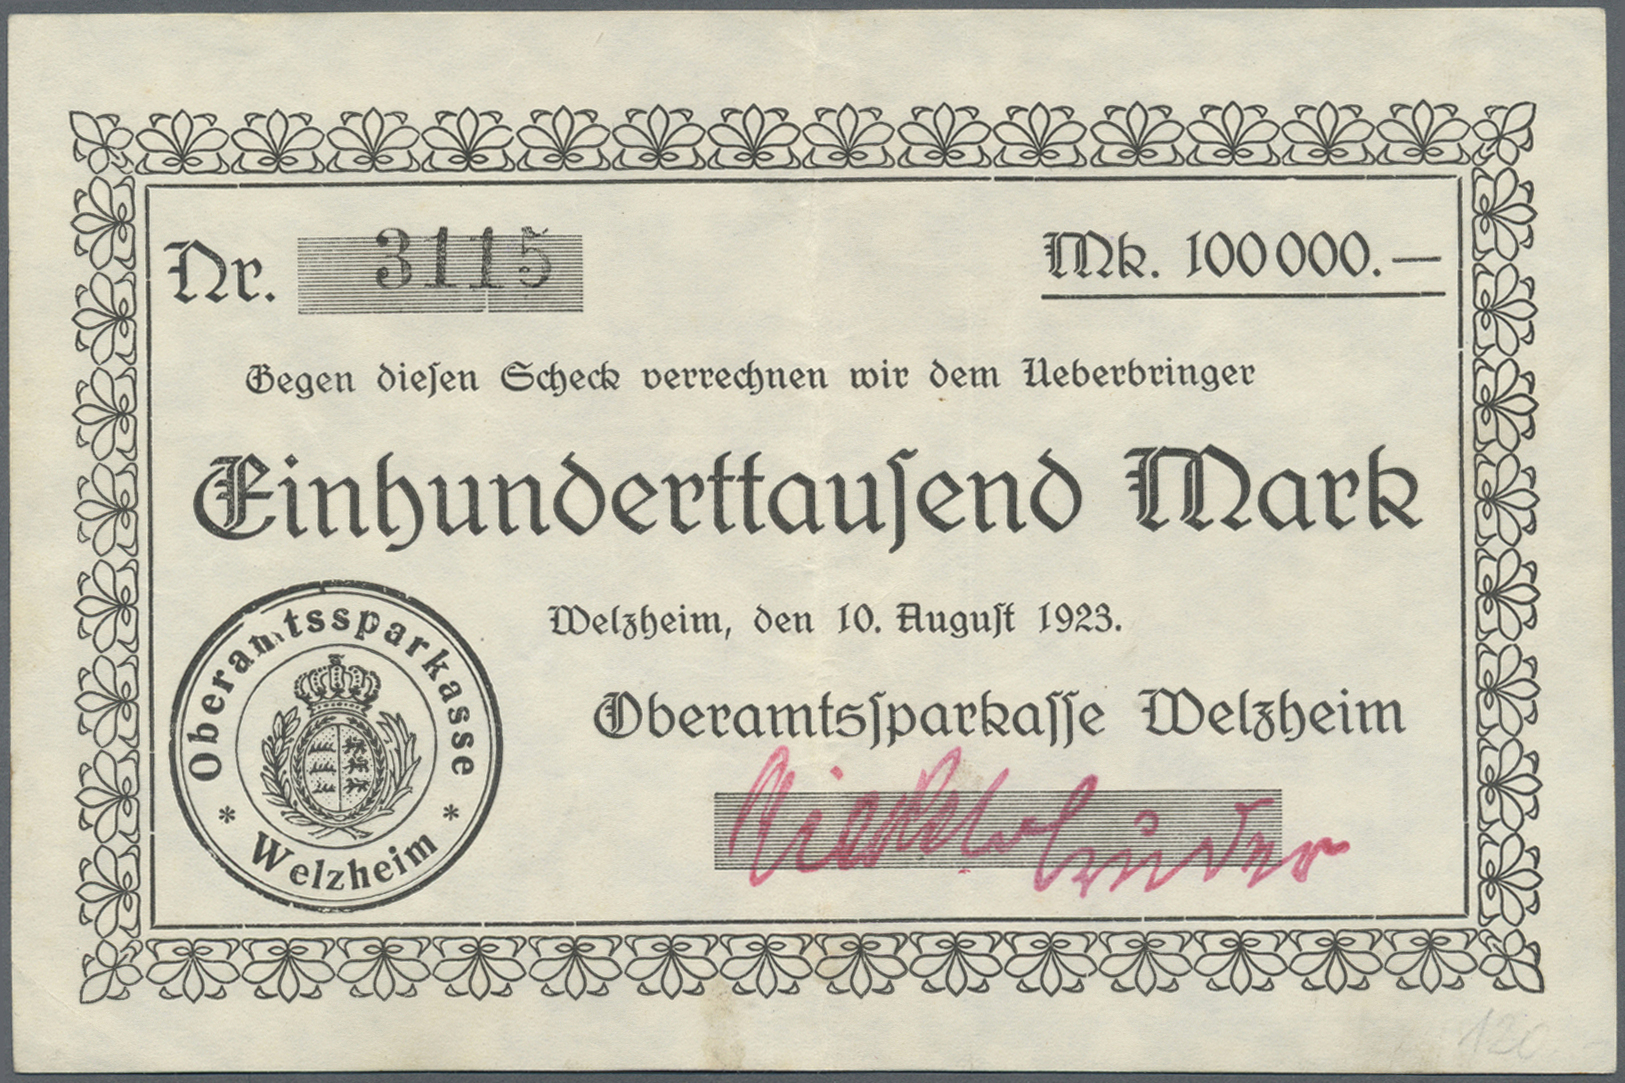 04401 Deutschland - Notgeld - Württemberg: Welzheim, Oberamtssparkasse, 100, 500 Tsd., 1 Mio. Mark, 10.8.1923, Erh. Meis - [11] Emissions Locales